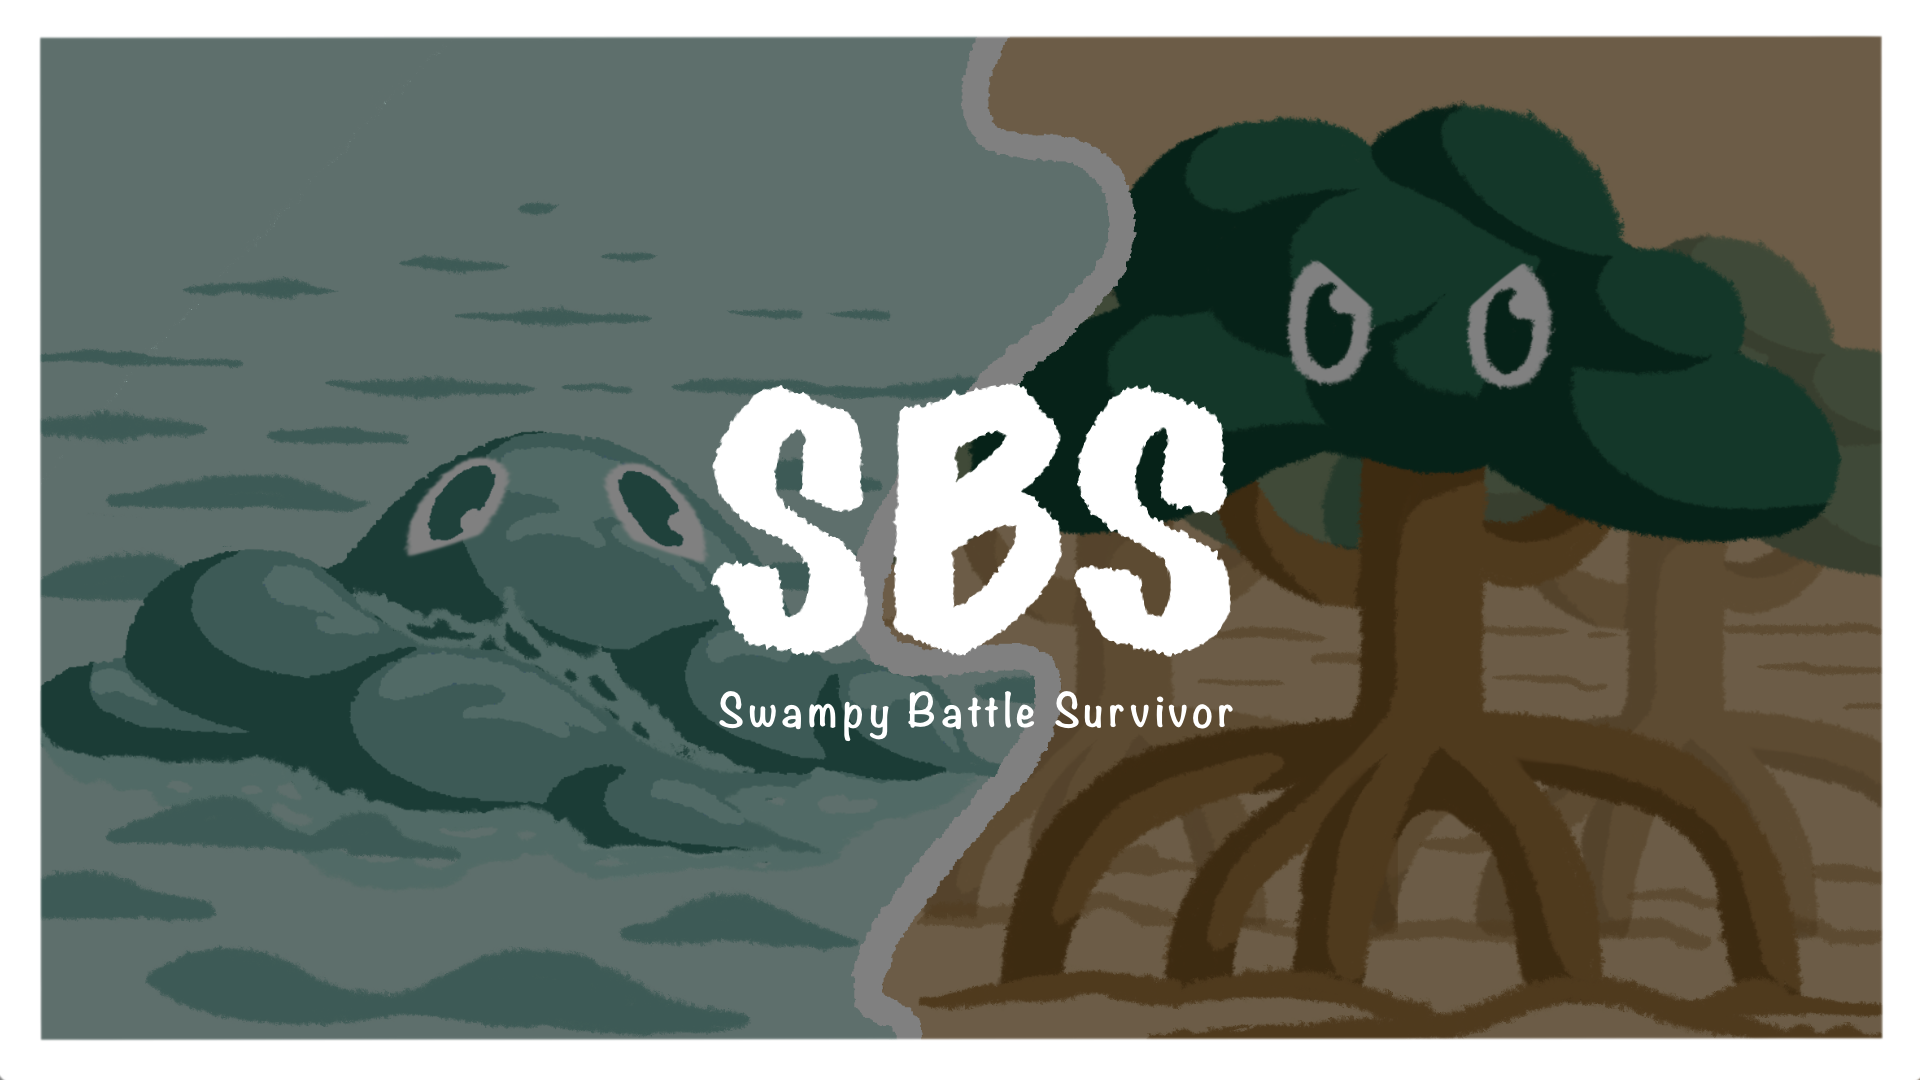 Swampy Battle Survivor